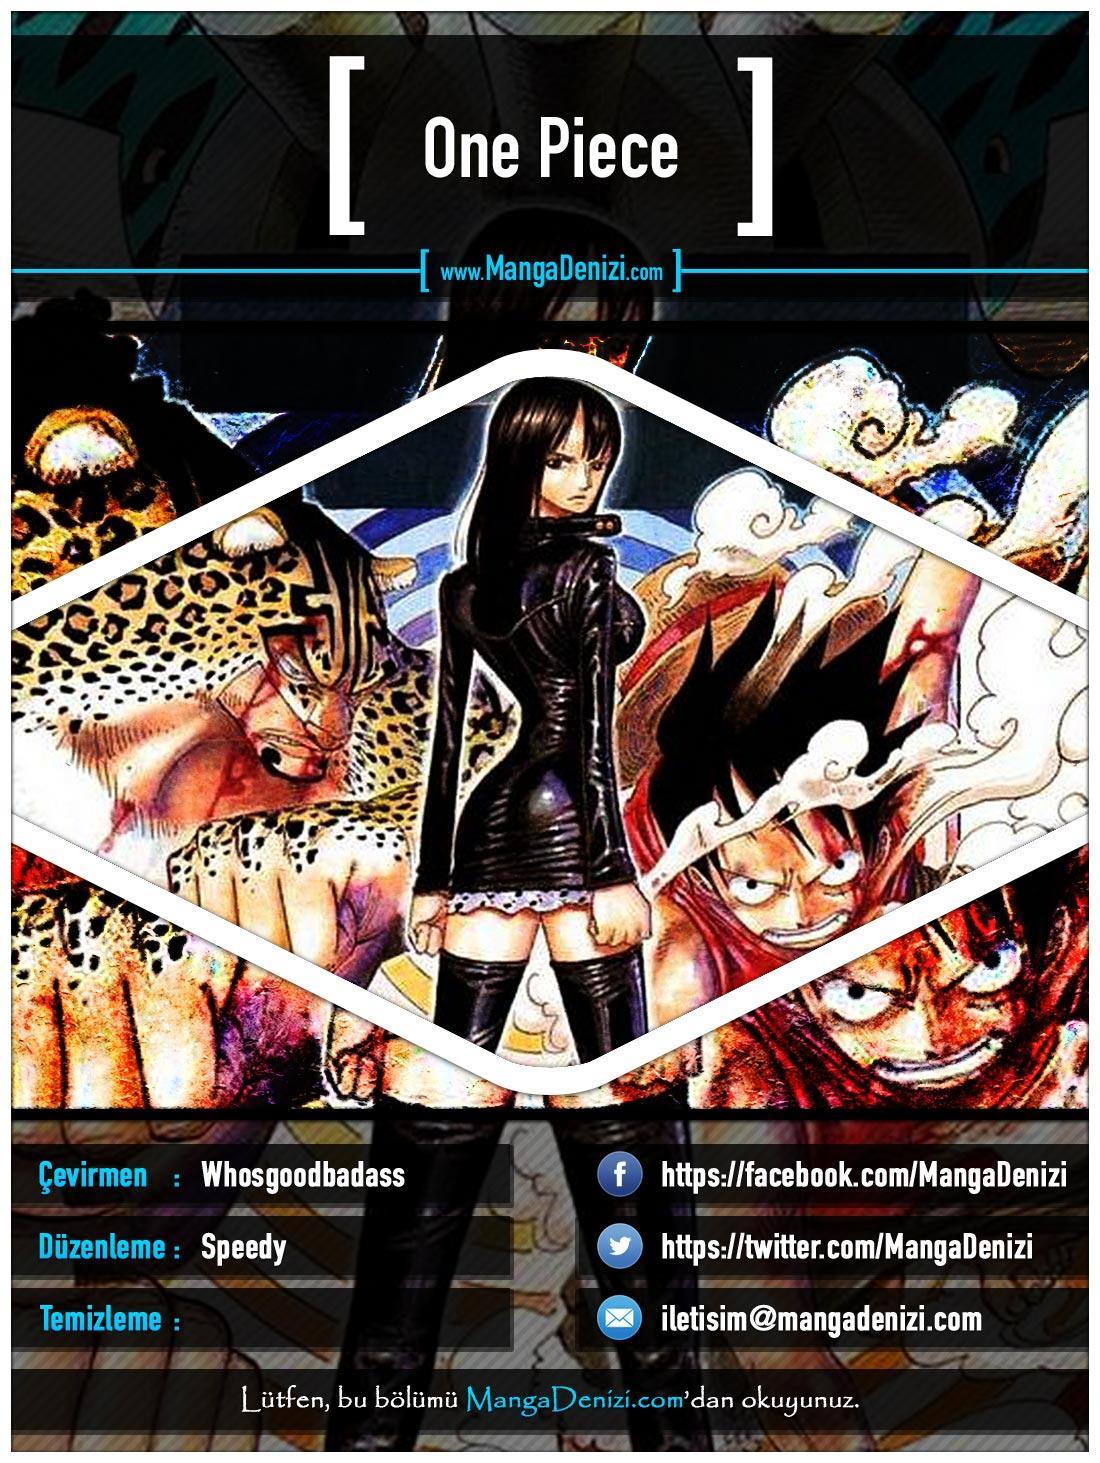 One Piece [Renkli] mangasının 0341 bölümünün 1. sayfasını okuyorsunuz.